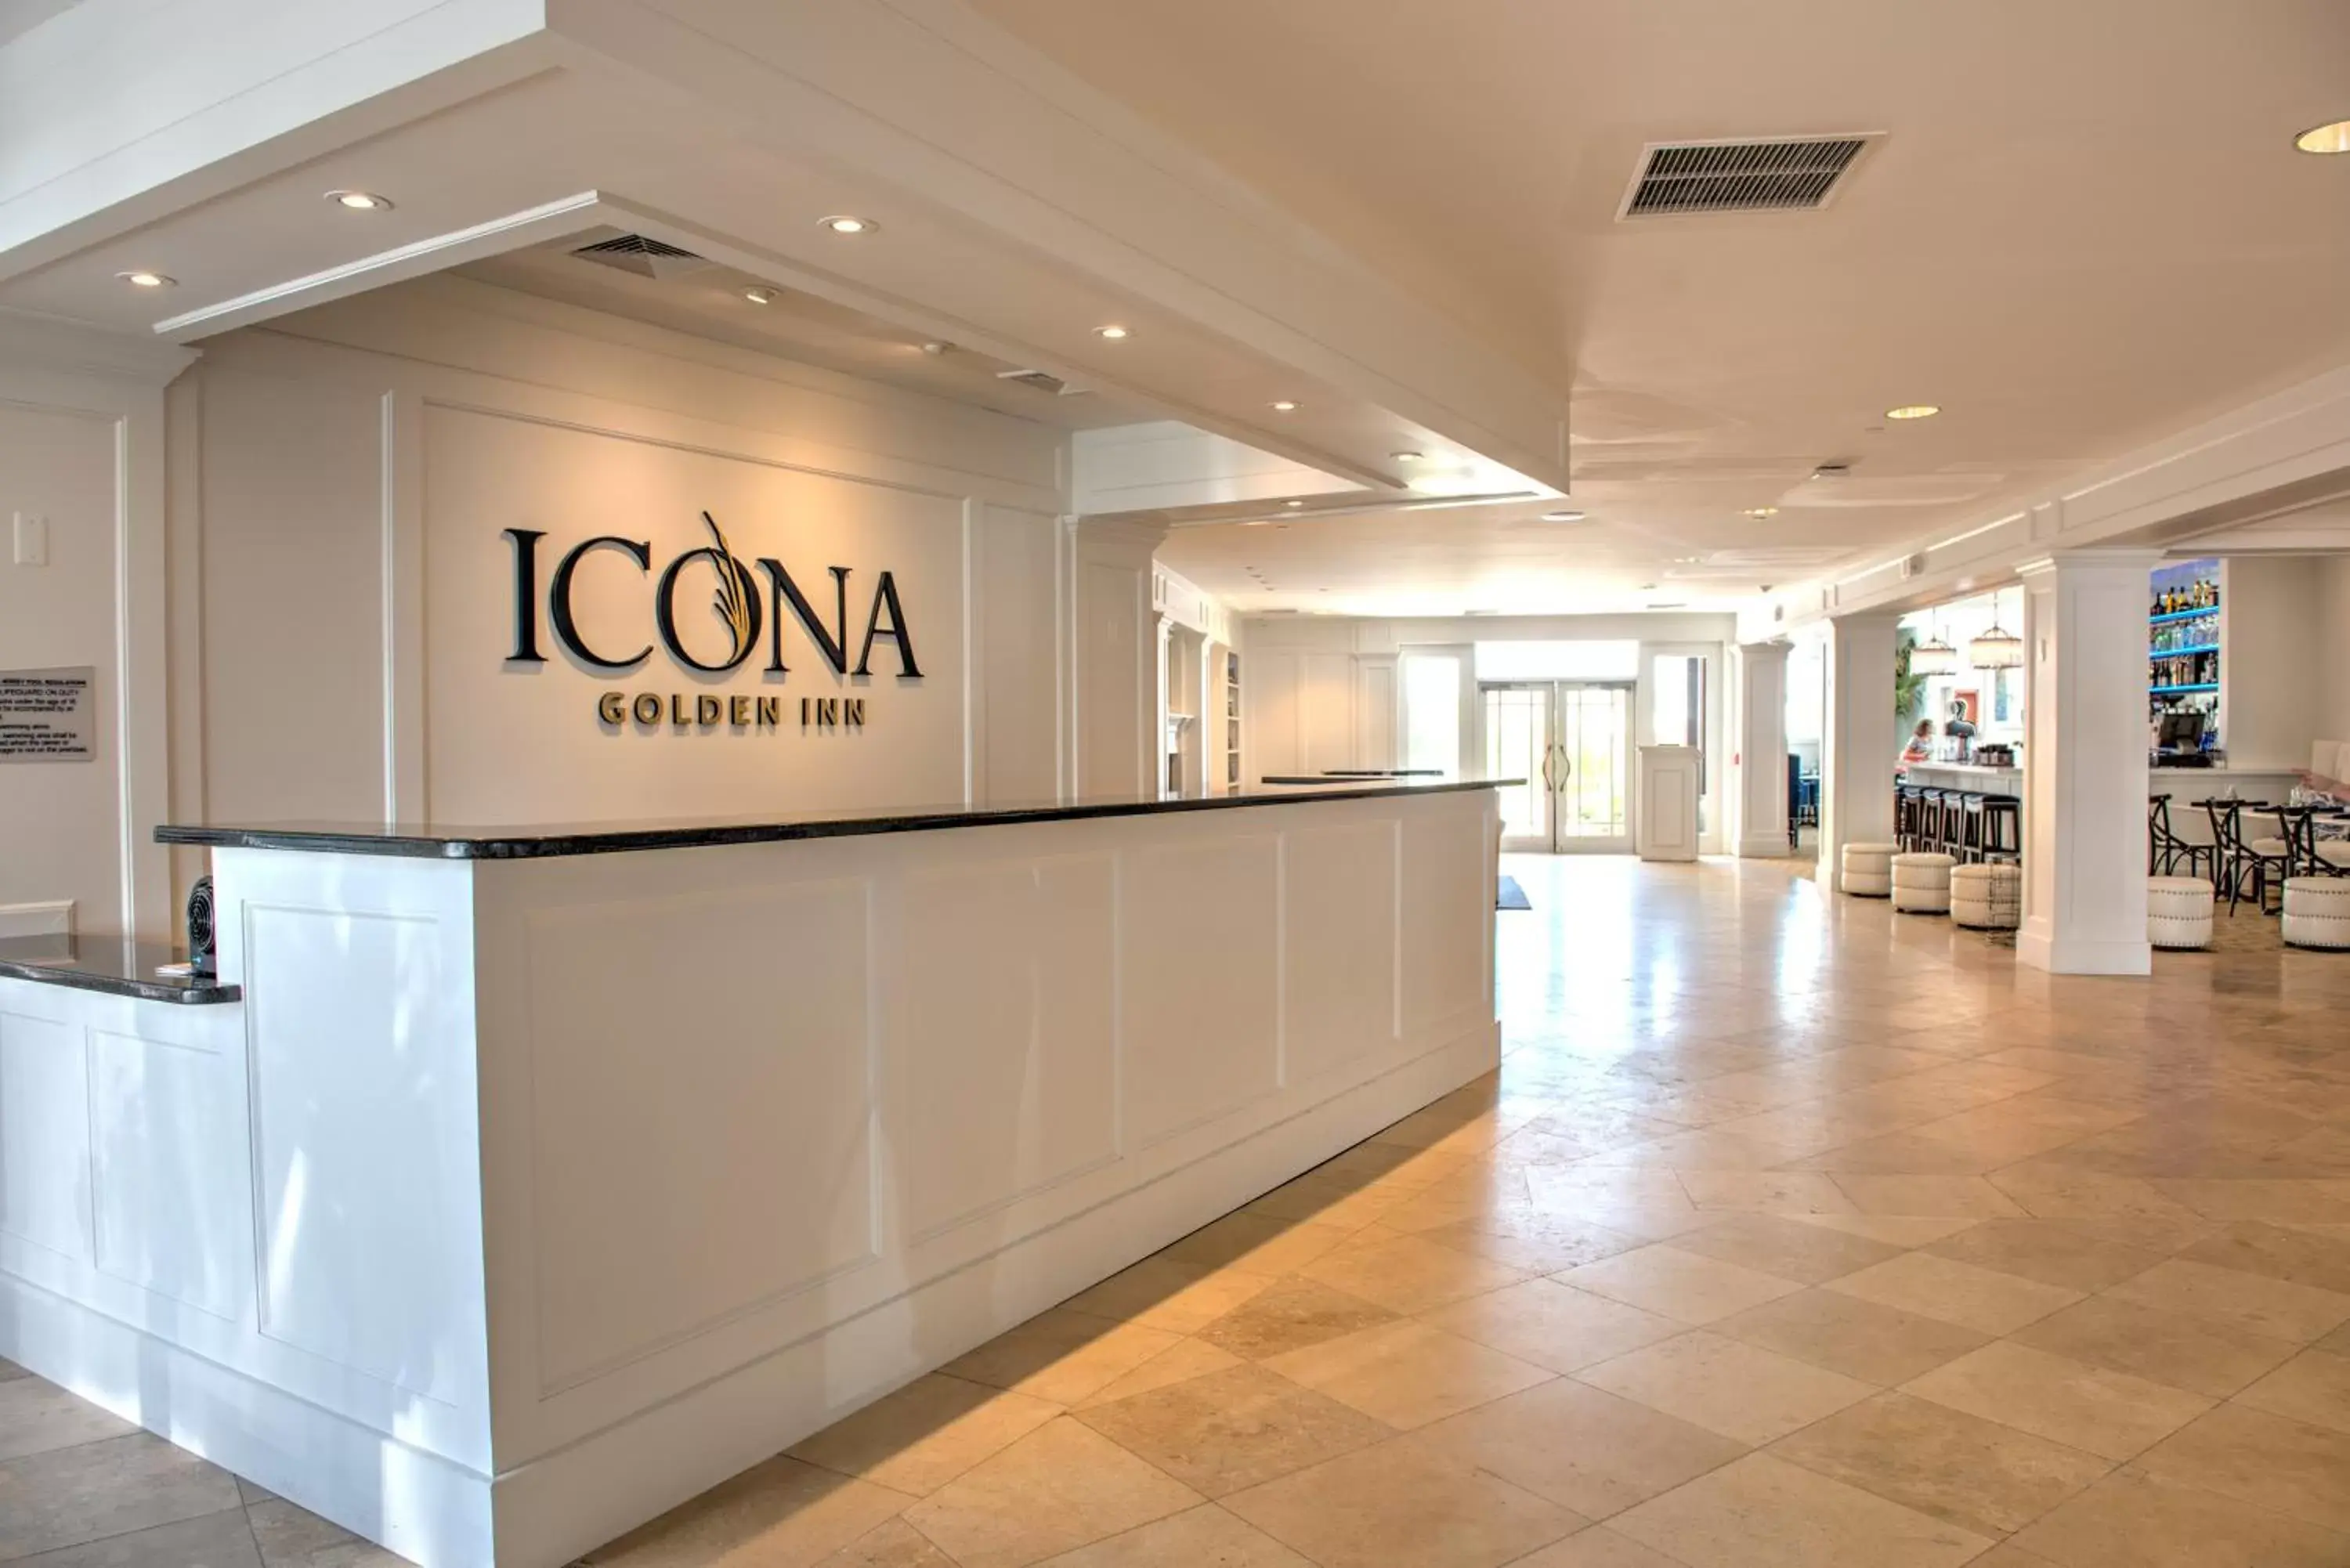 Lobby or reception, Lobby/Reception in ICONA Avalon